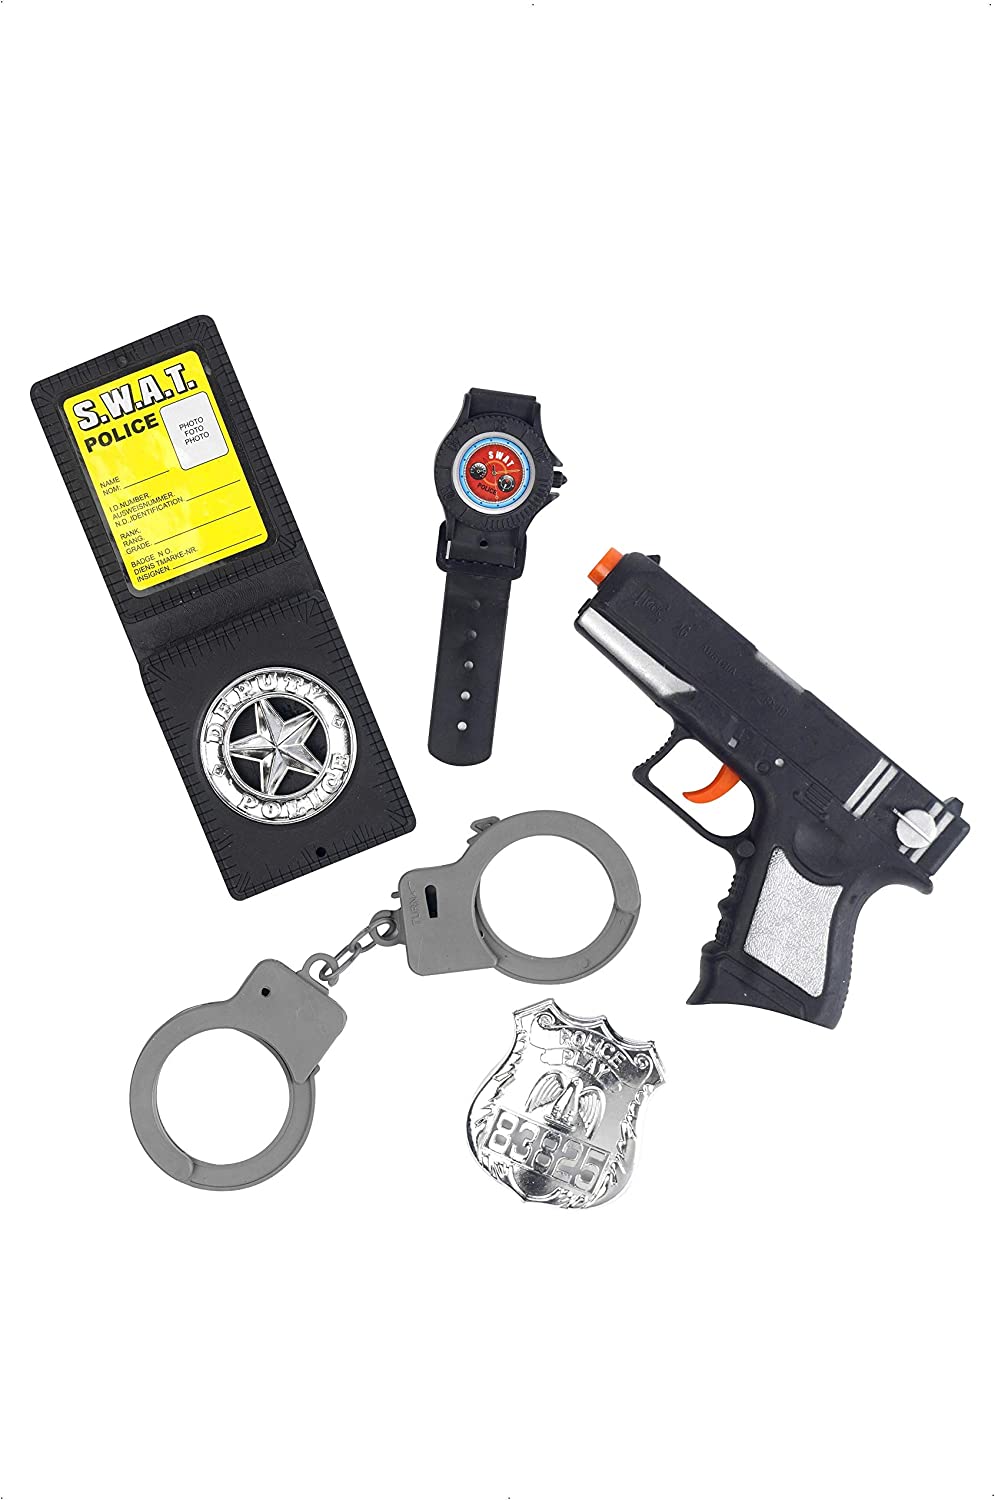 Smiffys Polizei-Set mit Waffenhandschellenabzeichen und Uhr